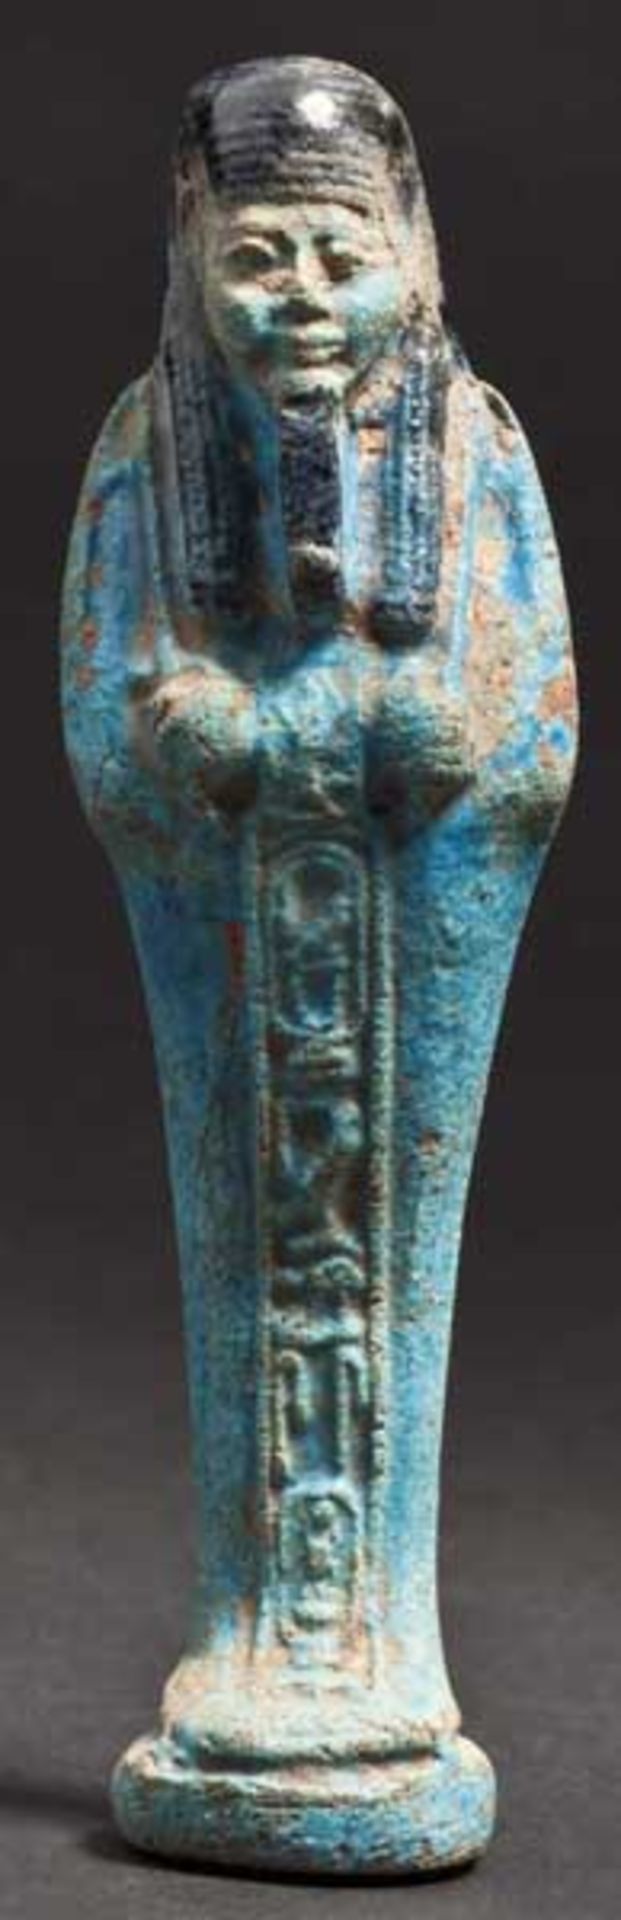 Uschebti, altägyptisch, 1. Hälfte 1. Jtsd. v. Chr.   Dienerfigur aus glasierter Fritte in